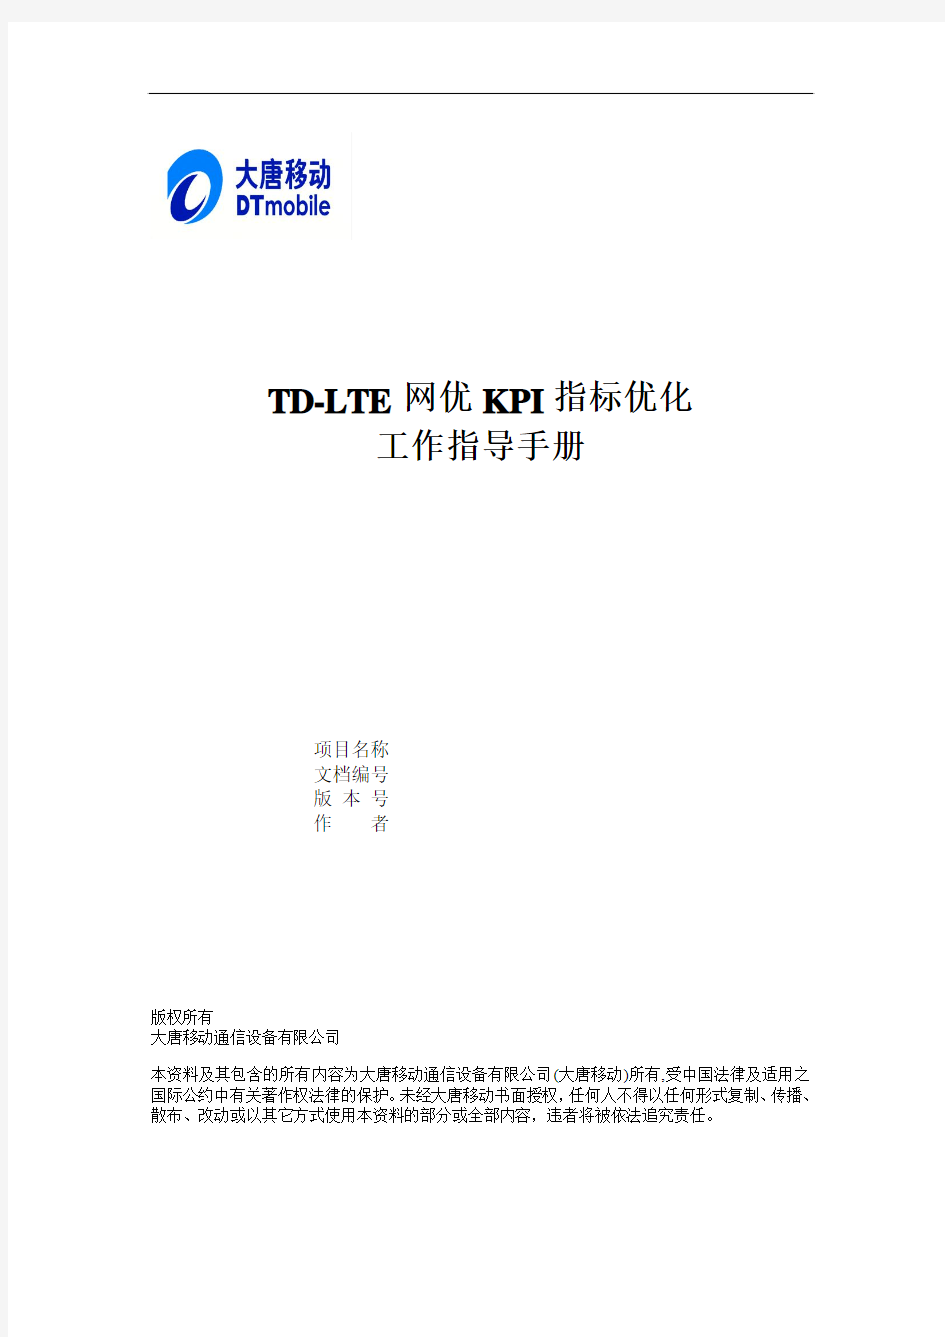 TD-LTE网优KPI指标优化工作指导手册V0.0.8